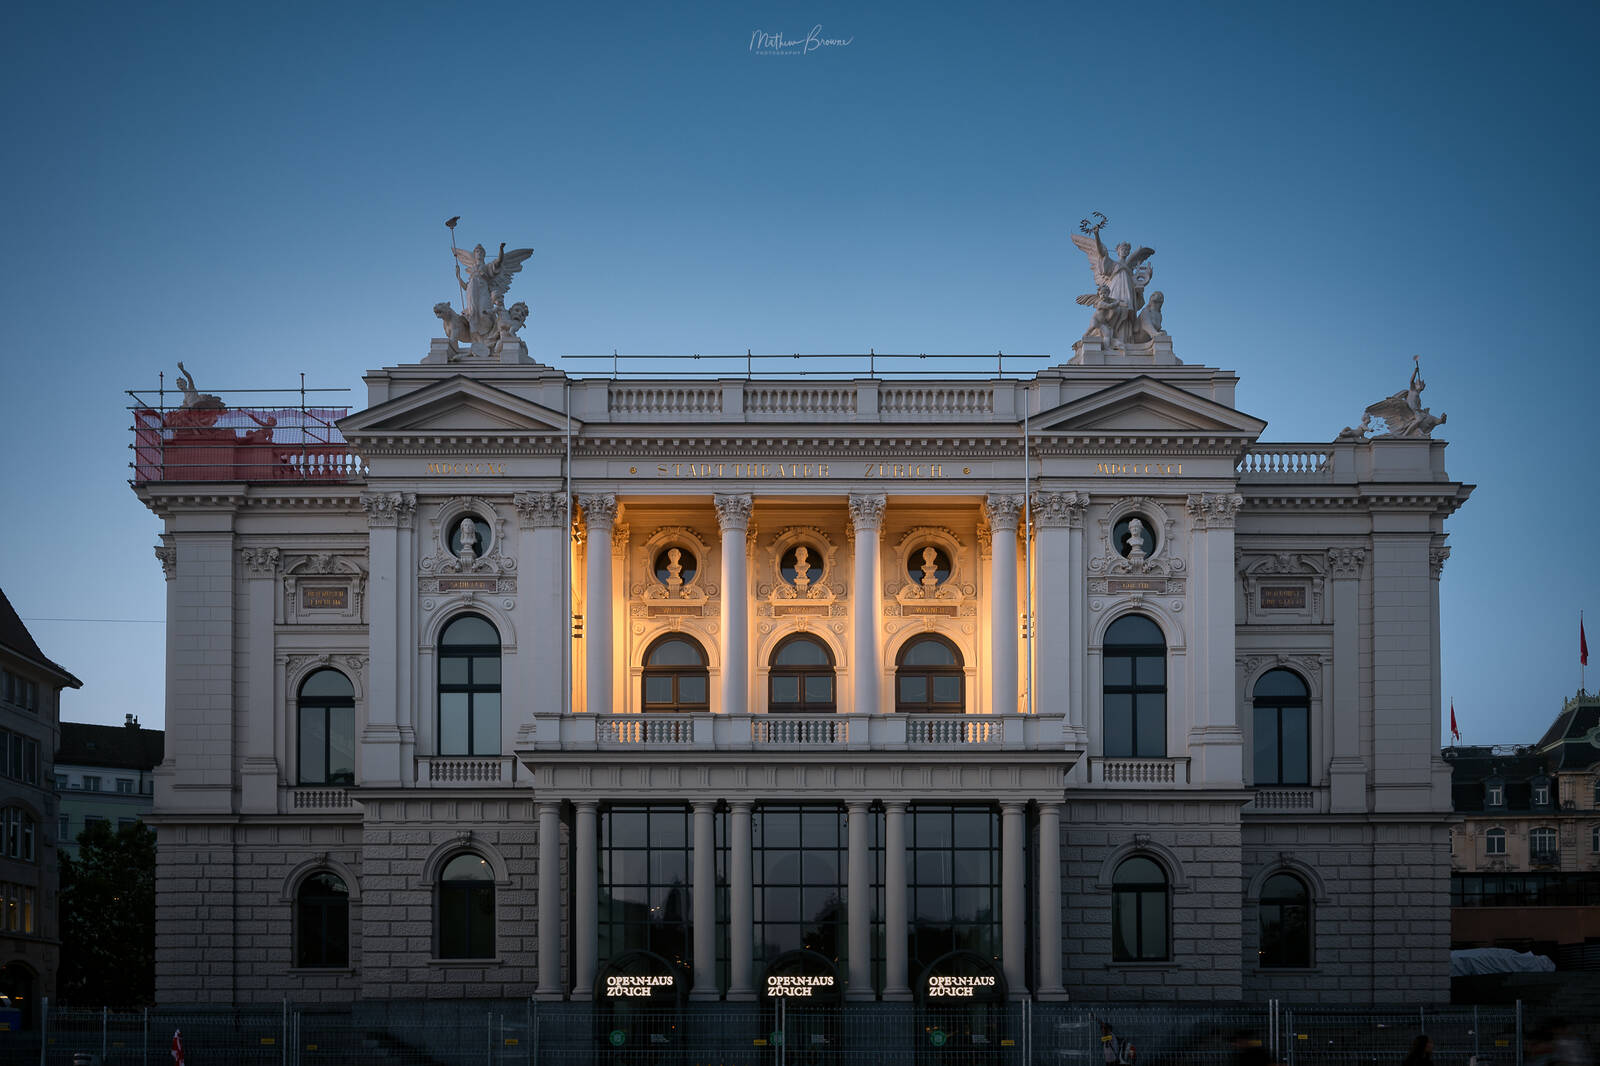 Image of Zurich Opera House (Opernhaus Zurich) by Mathew Browne